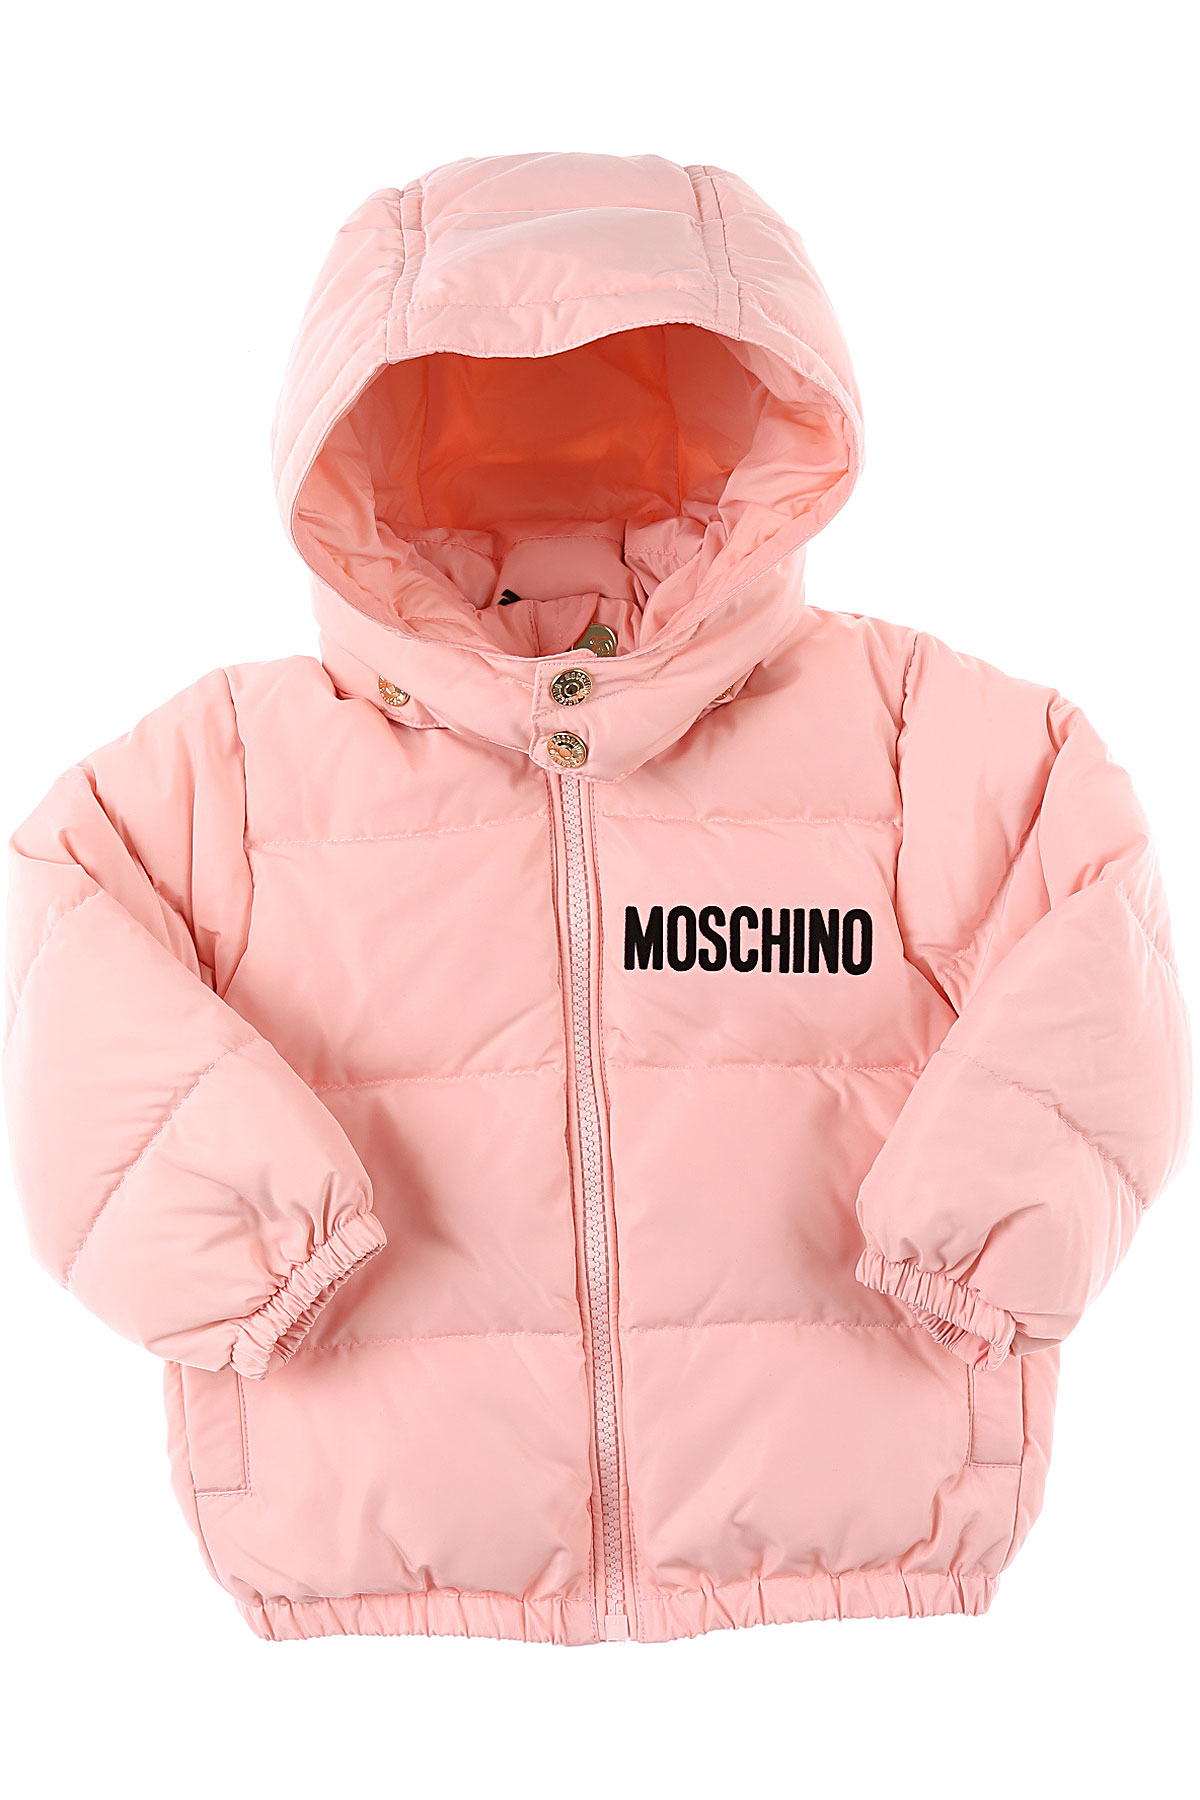 Moschino Baby Daunen Jacke für Mädchen Günstig im Sale, Pink, Polyester, 2017, 18M 2Y 3Y